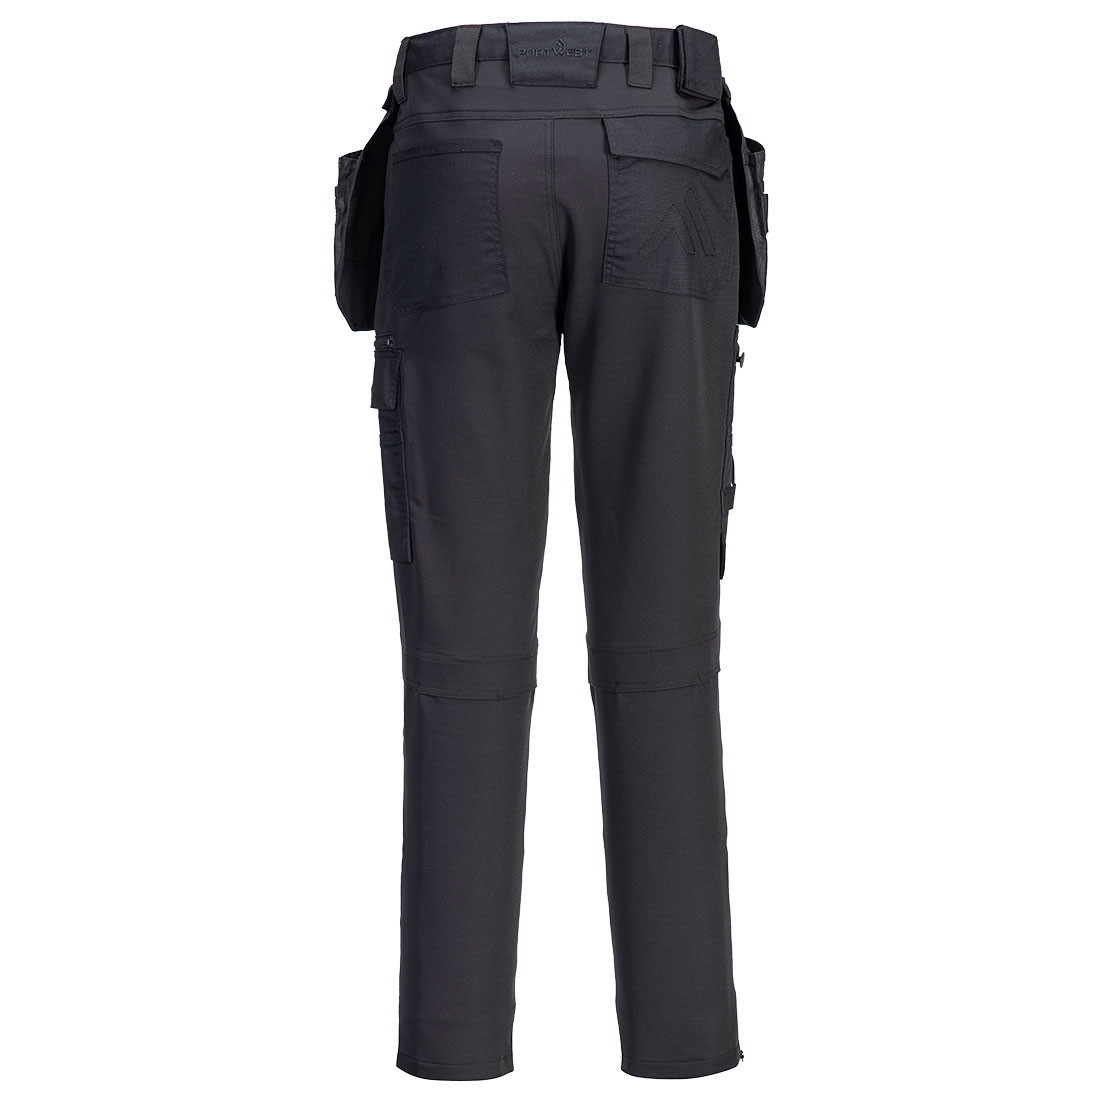 Pantaloni DX4 Craft Holster - Abbigliamento di protezione